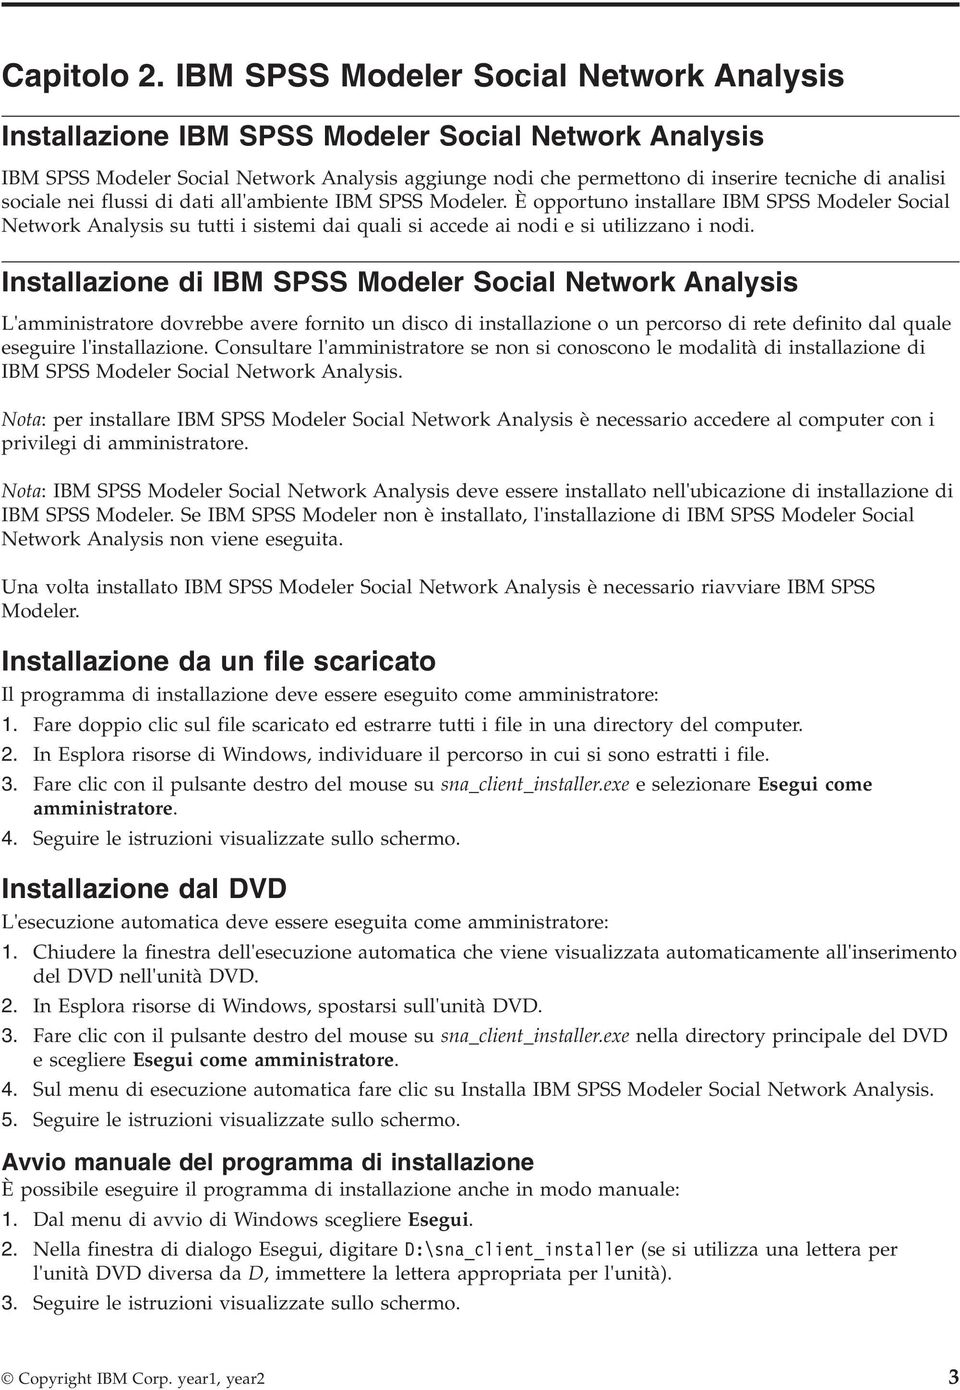 sociale nei flussi di dati all'ambiente IBM SPSS Modeler. È opportuno installare IBM SPSS Modeler Social Network Analysis su tutti i sistemi dai quali si accede ai nodi e si utilizzano i nodi.